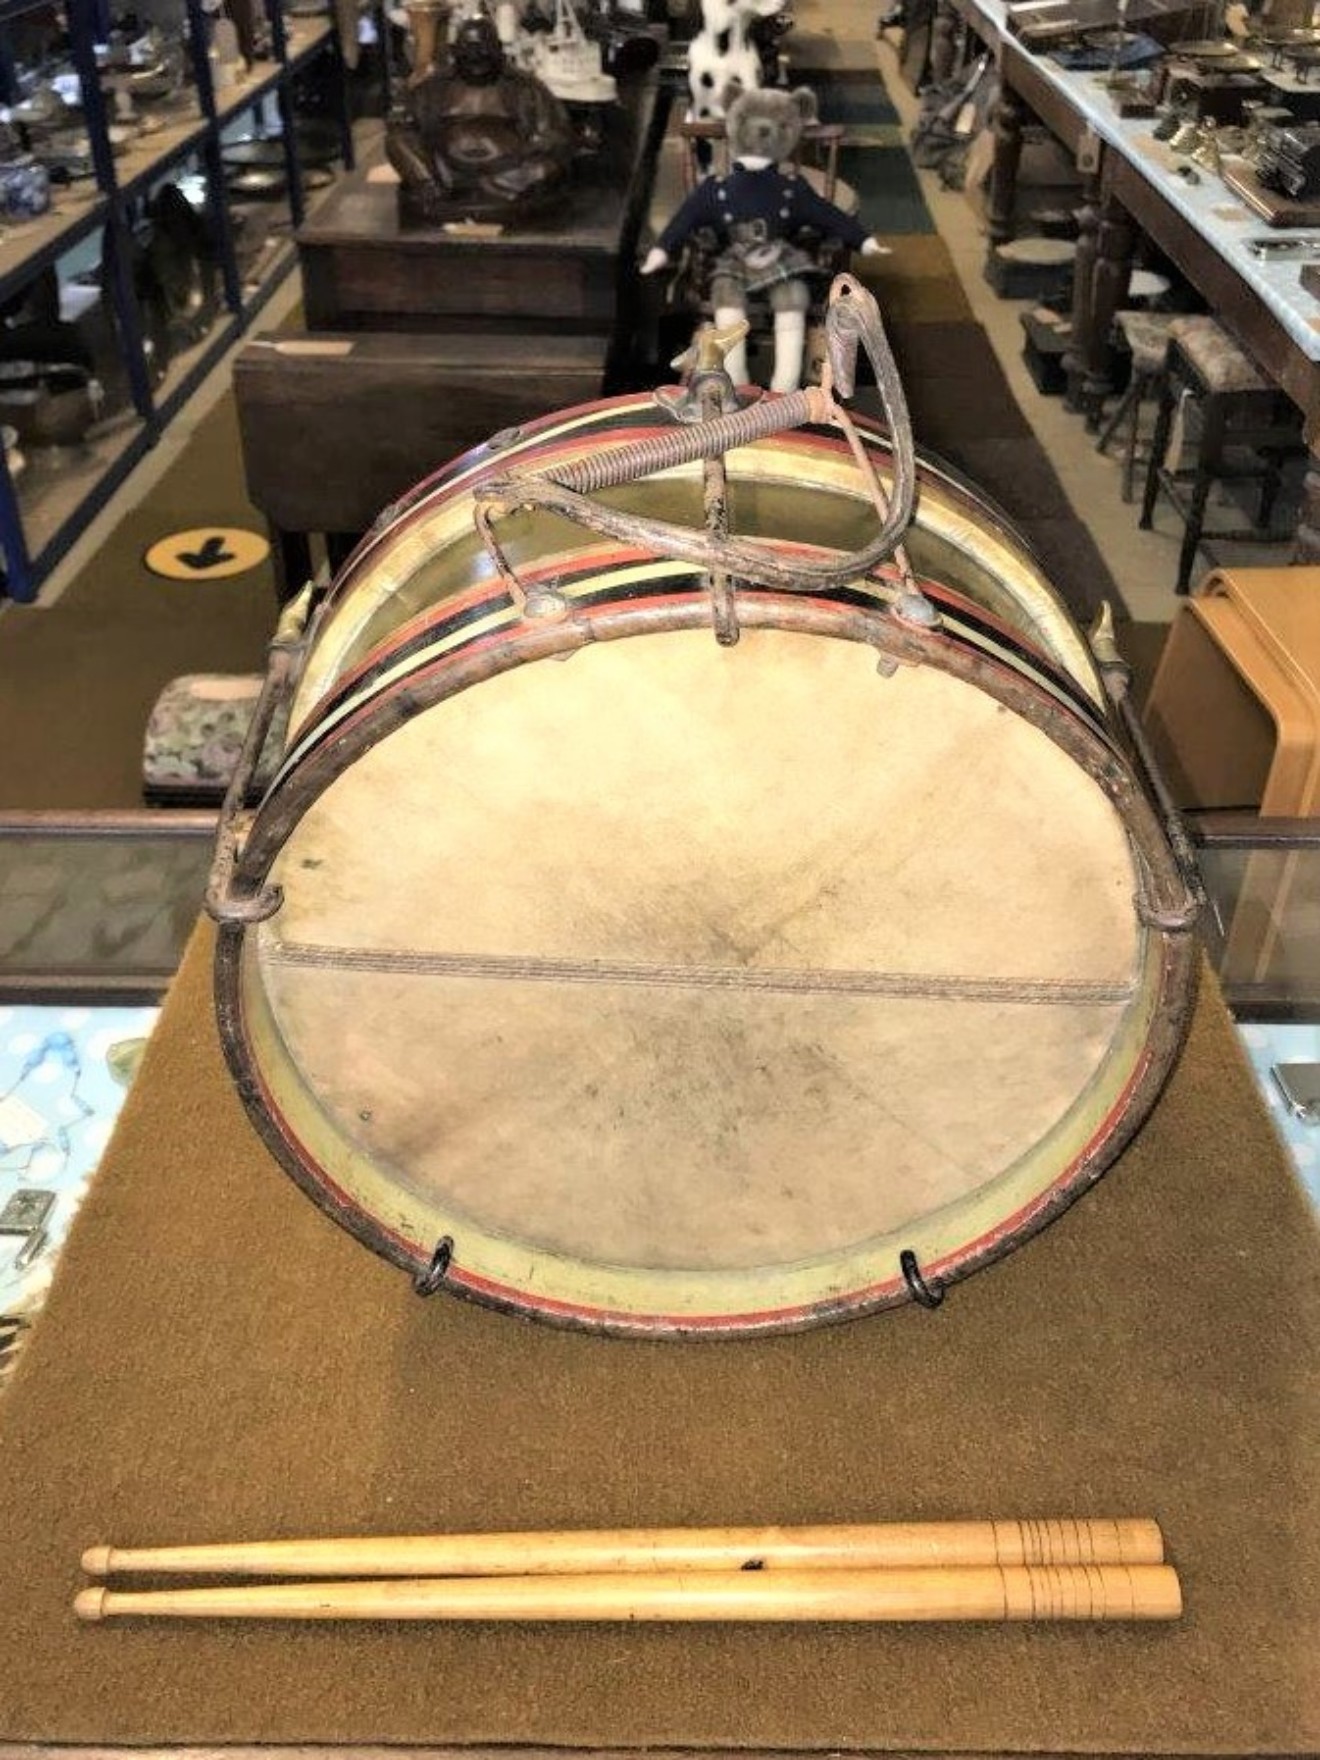 Antique Military Snare Drum